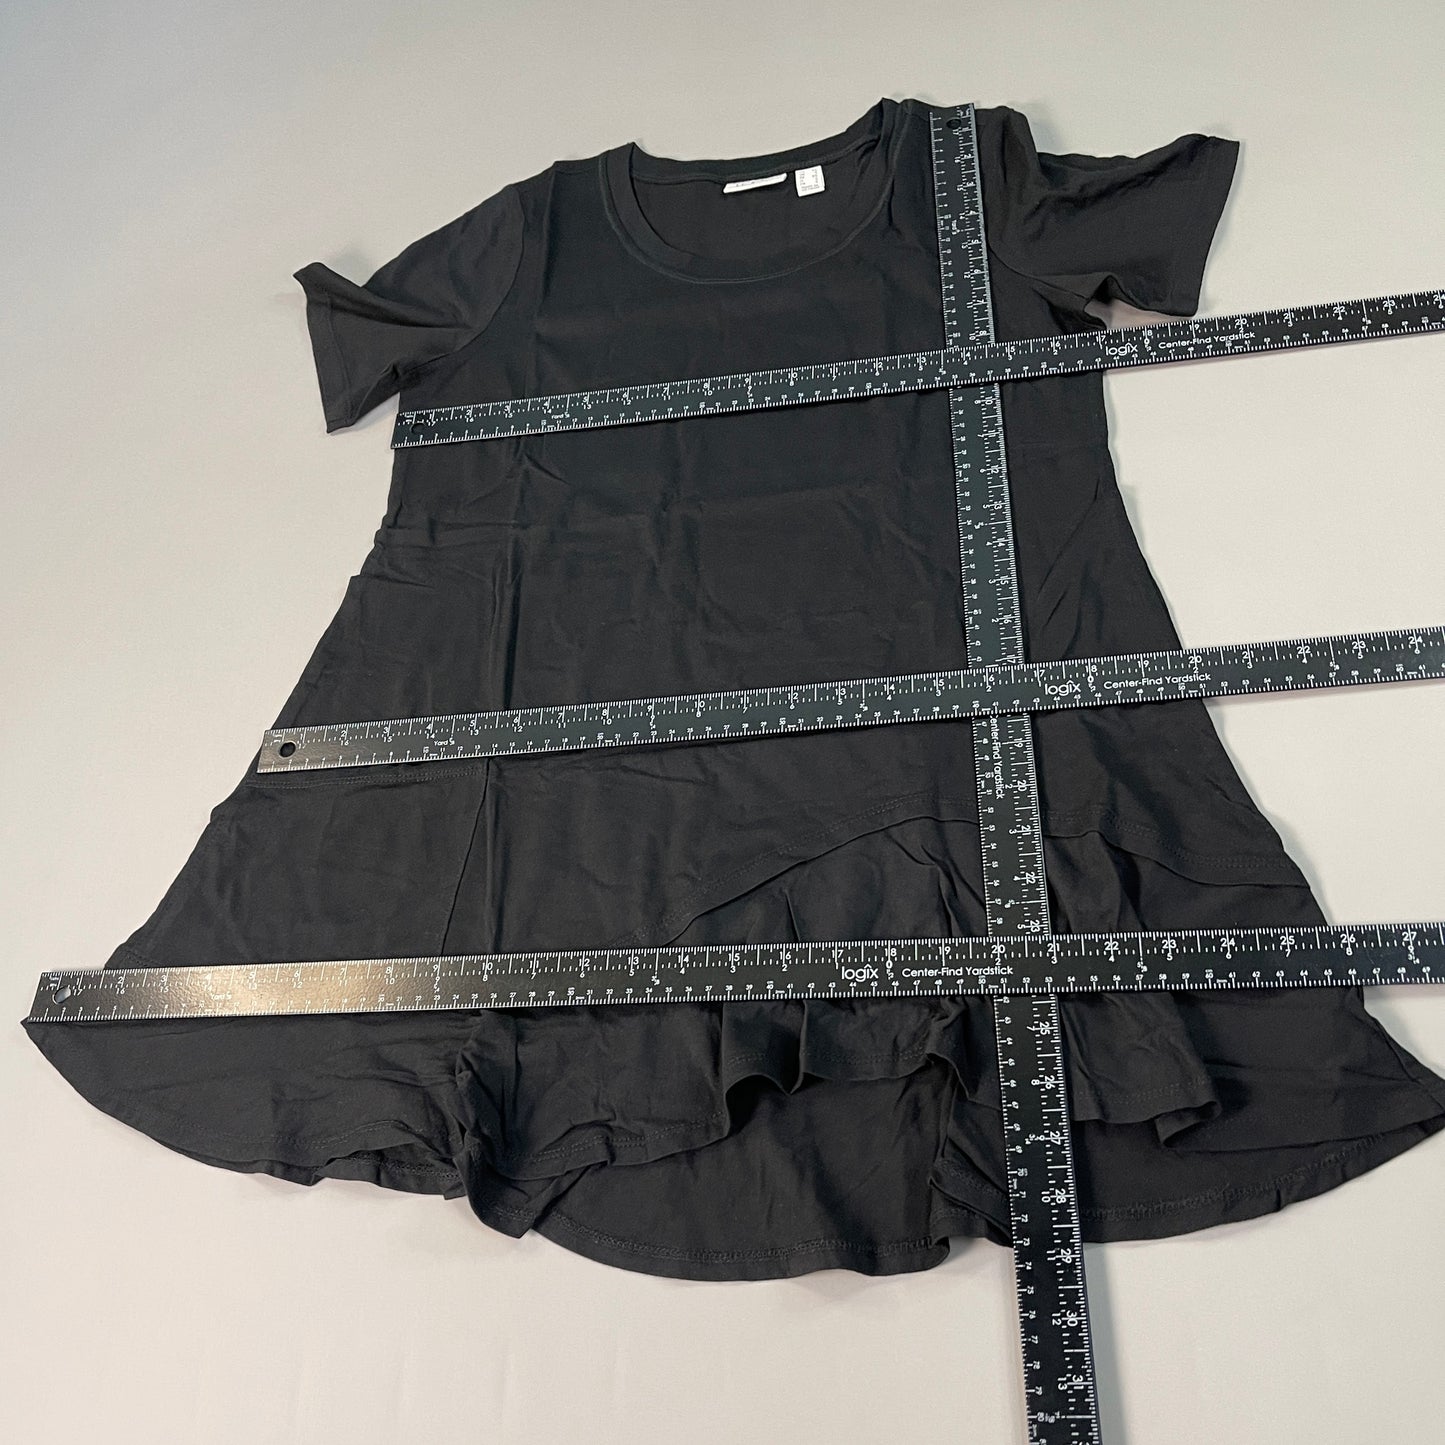 LOGO LORI GOLDSTEIN Knit Short Sleeve Shirt Asymmetric Hem Women's Sz XS Black (New)